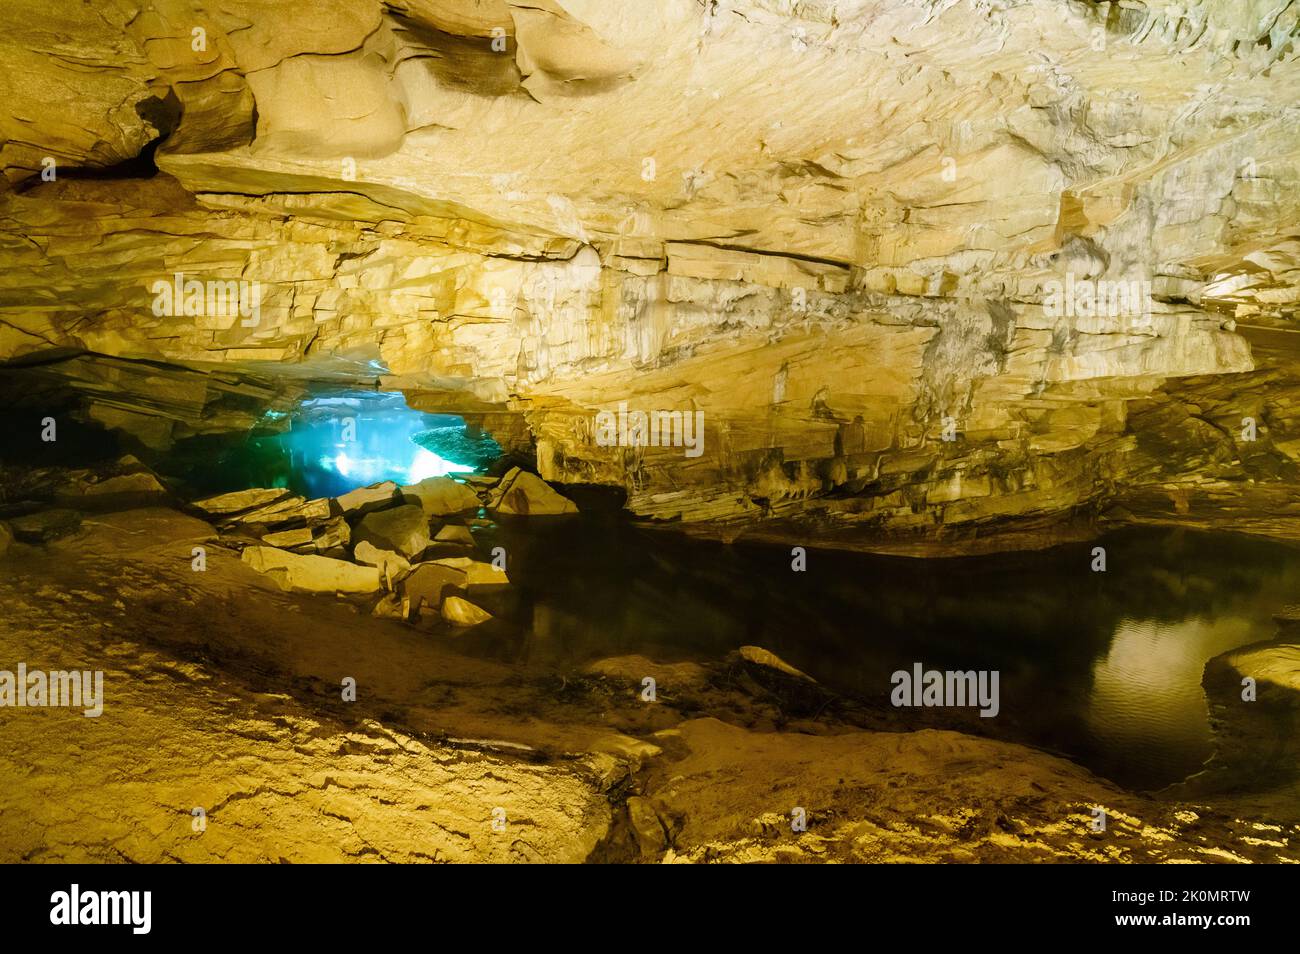 Rivière souterraine dans la grotte de Cascade dans le parc national carter Caves dans le Kentucky Banque D'Images